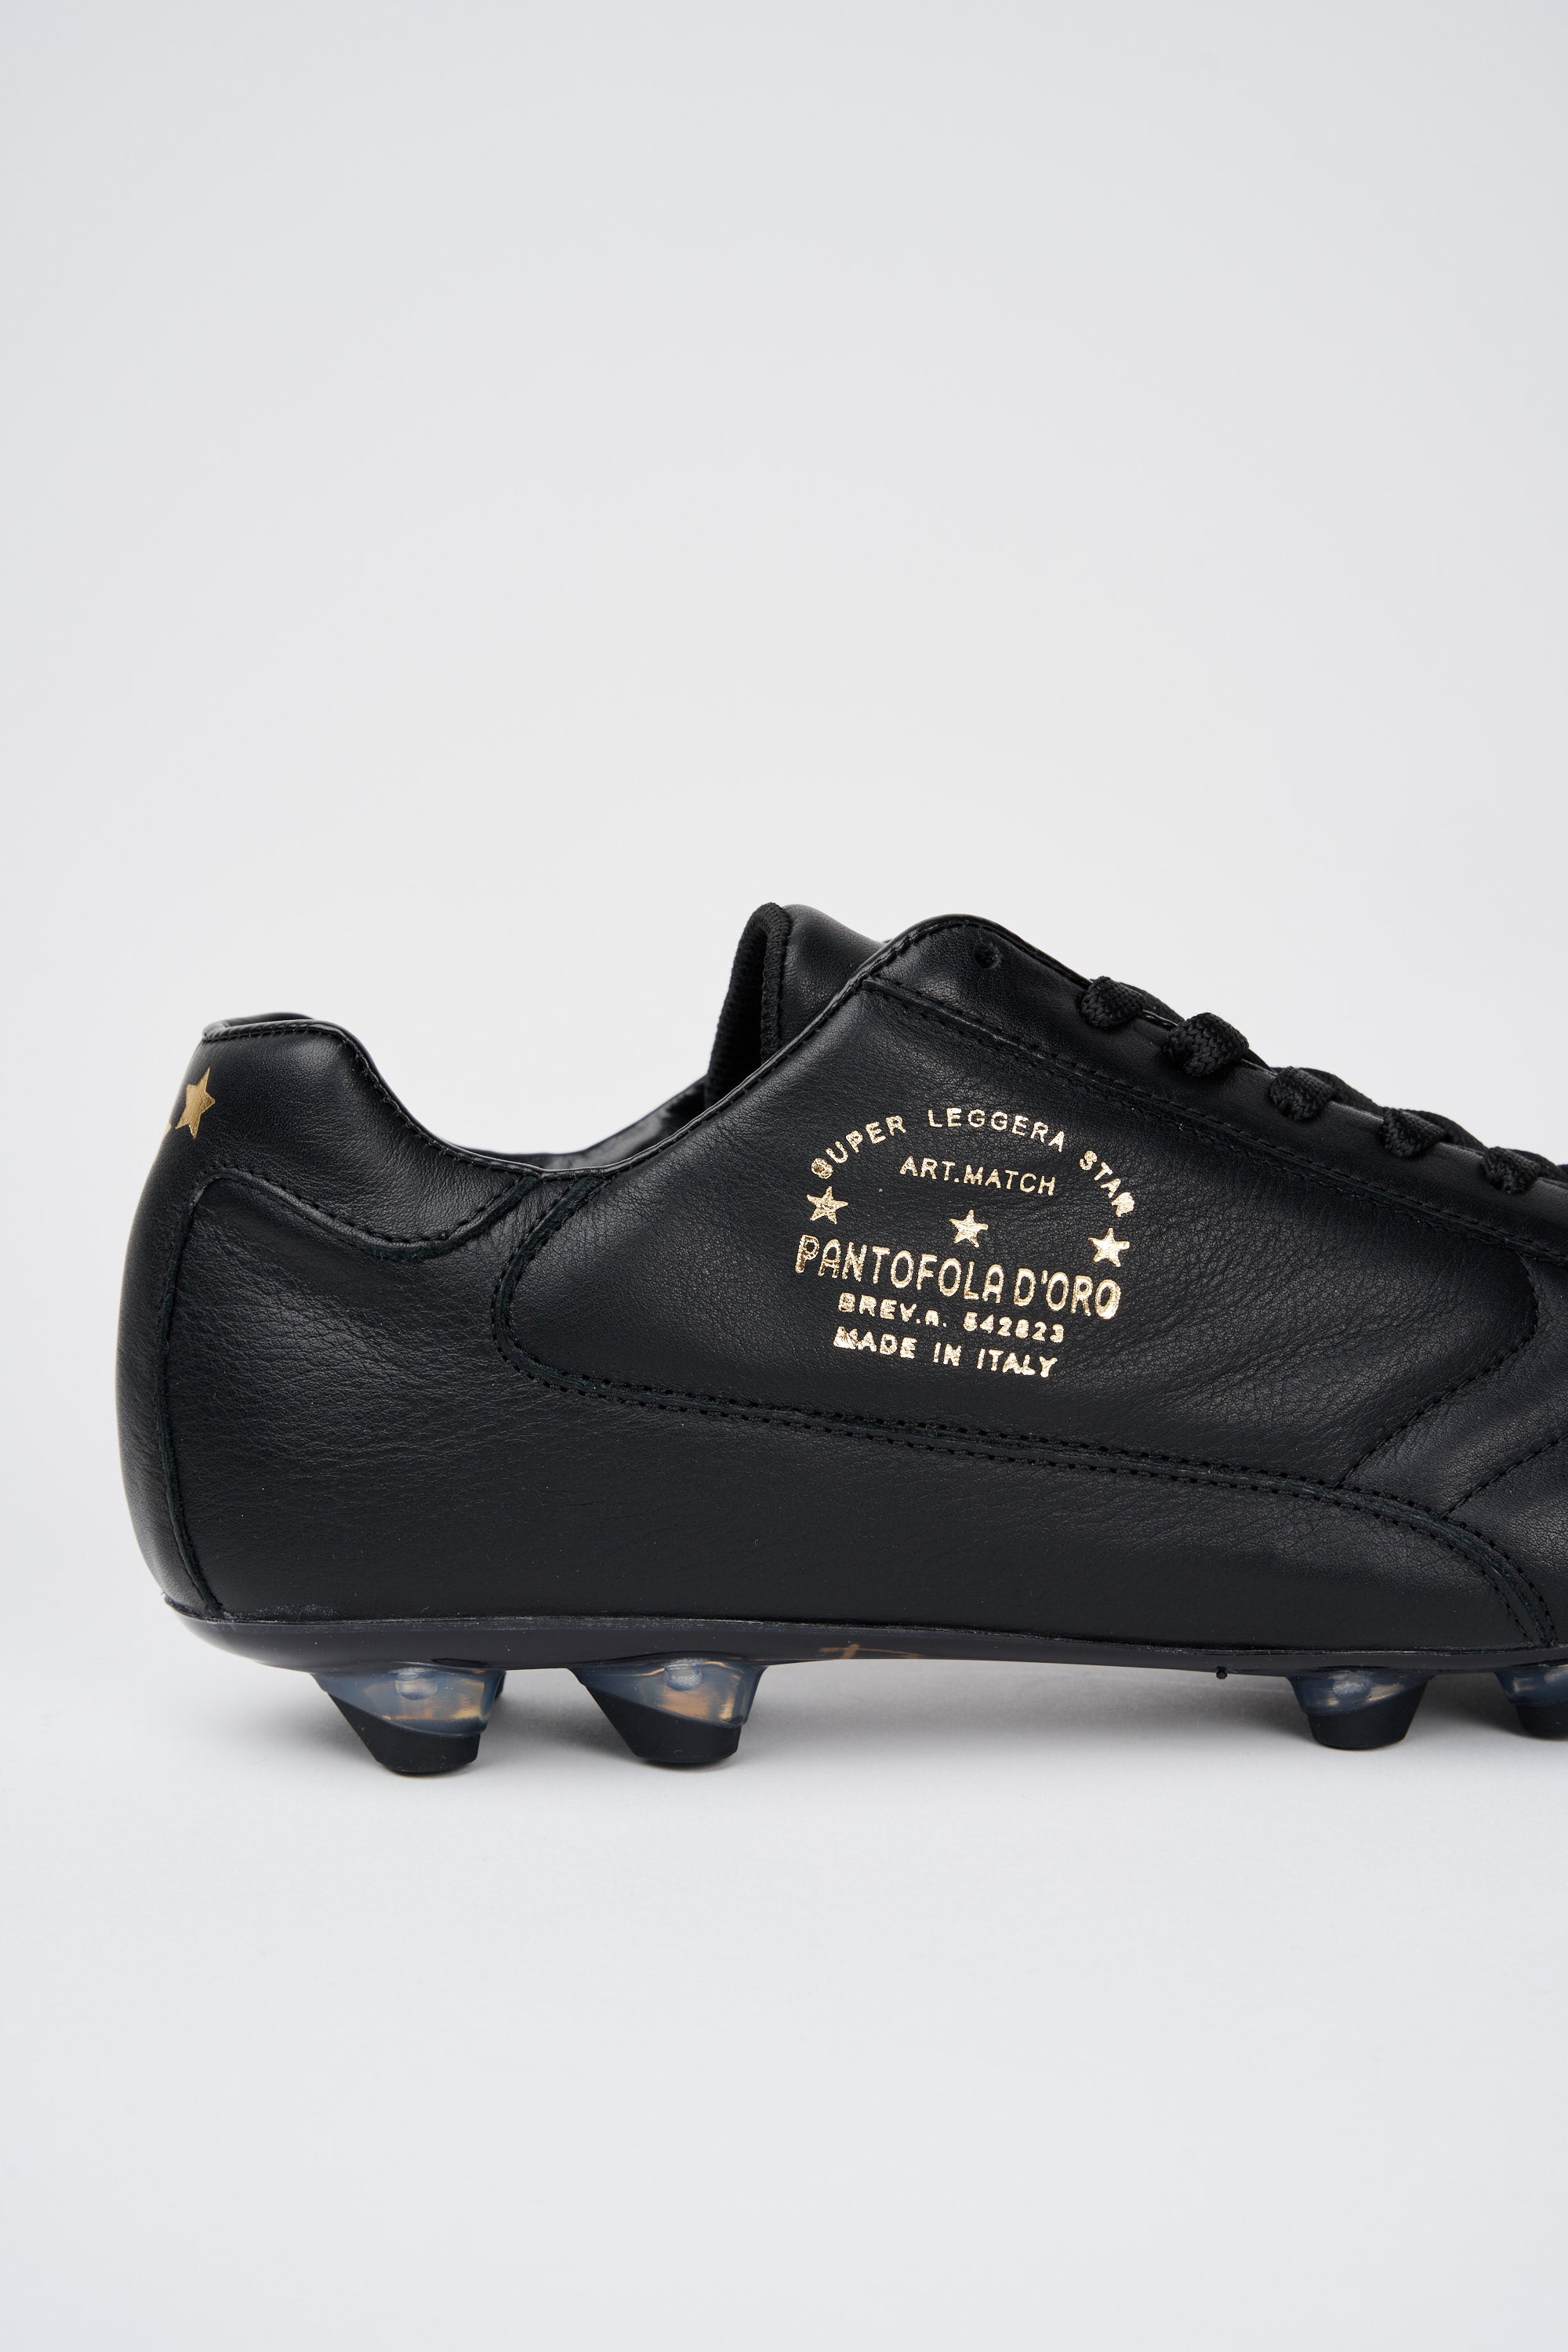 niettemin de eerste Wijzer Pantofola d'Oro Del Duca Leather Football Boot